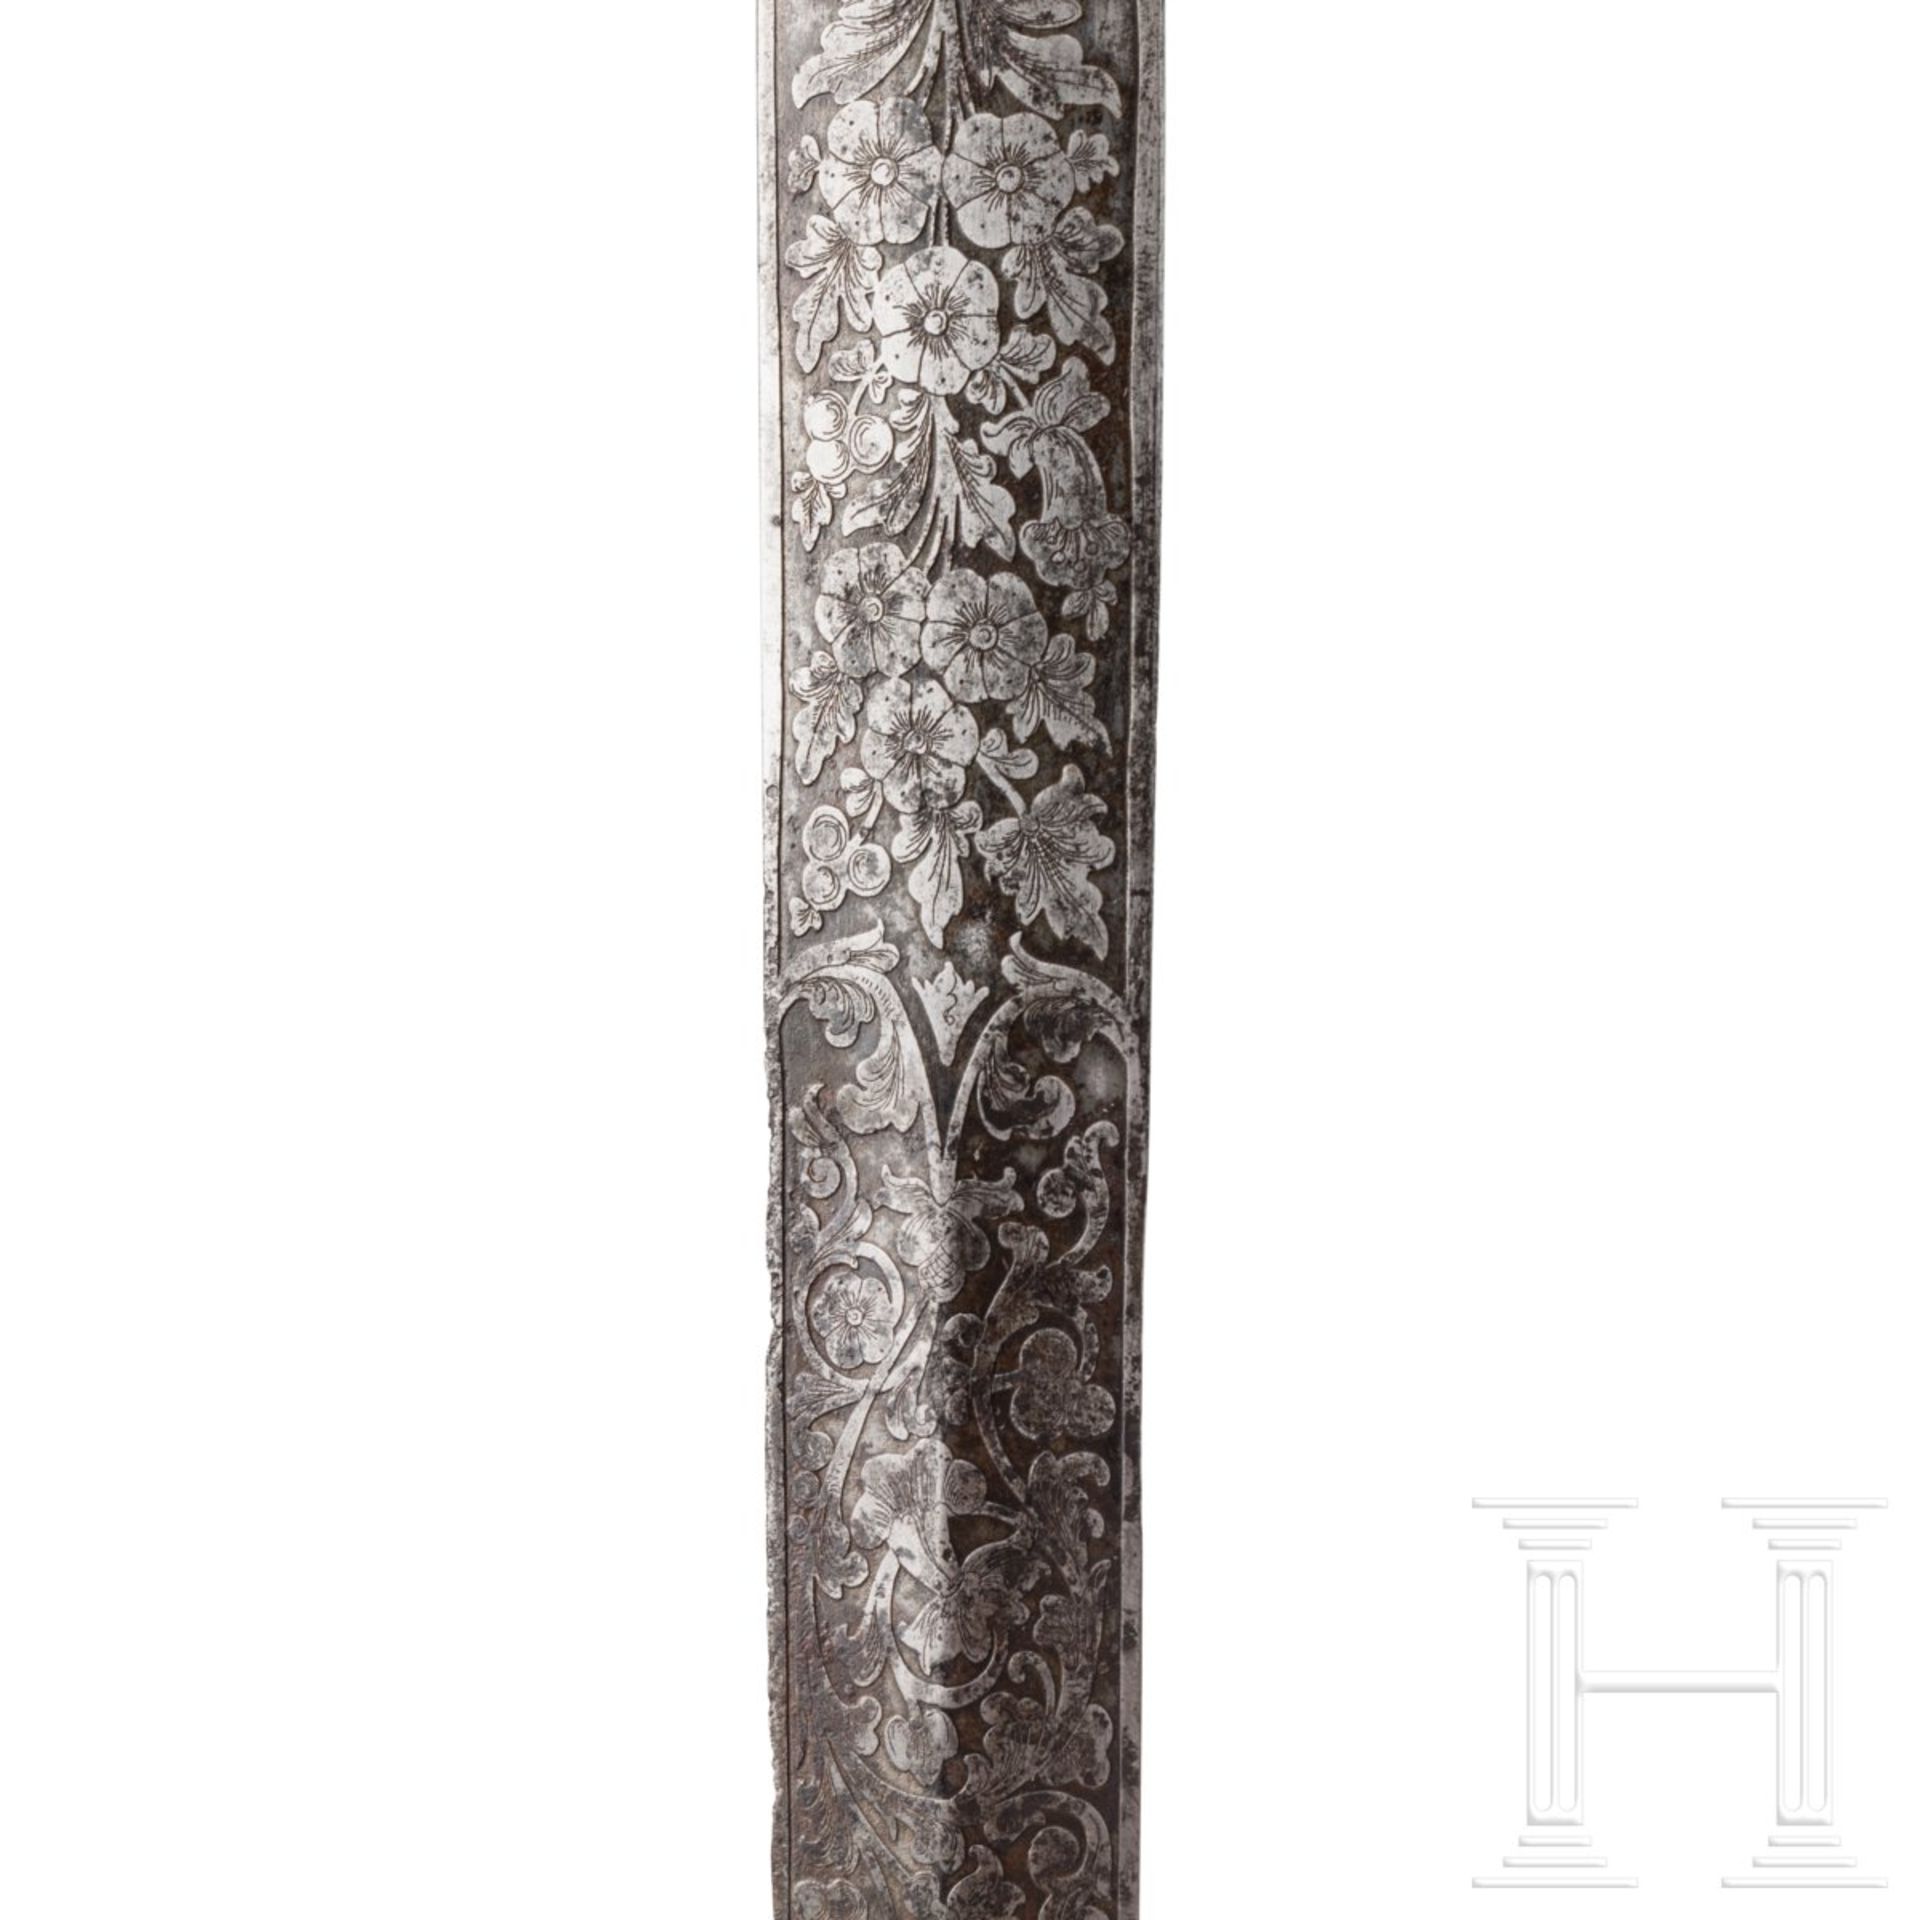 Fein geschnitztes Gefäß eines Luxus-Hirschfängers, Frankreich, 19. Jhdt. Extrem aufwendig - Bild 5 aus 7